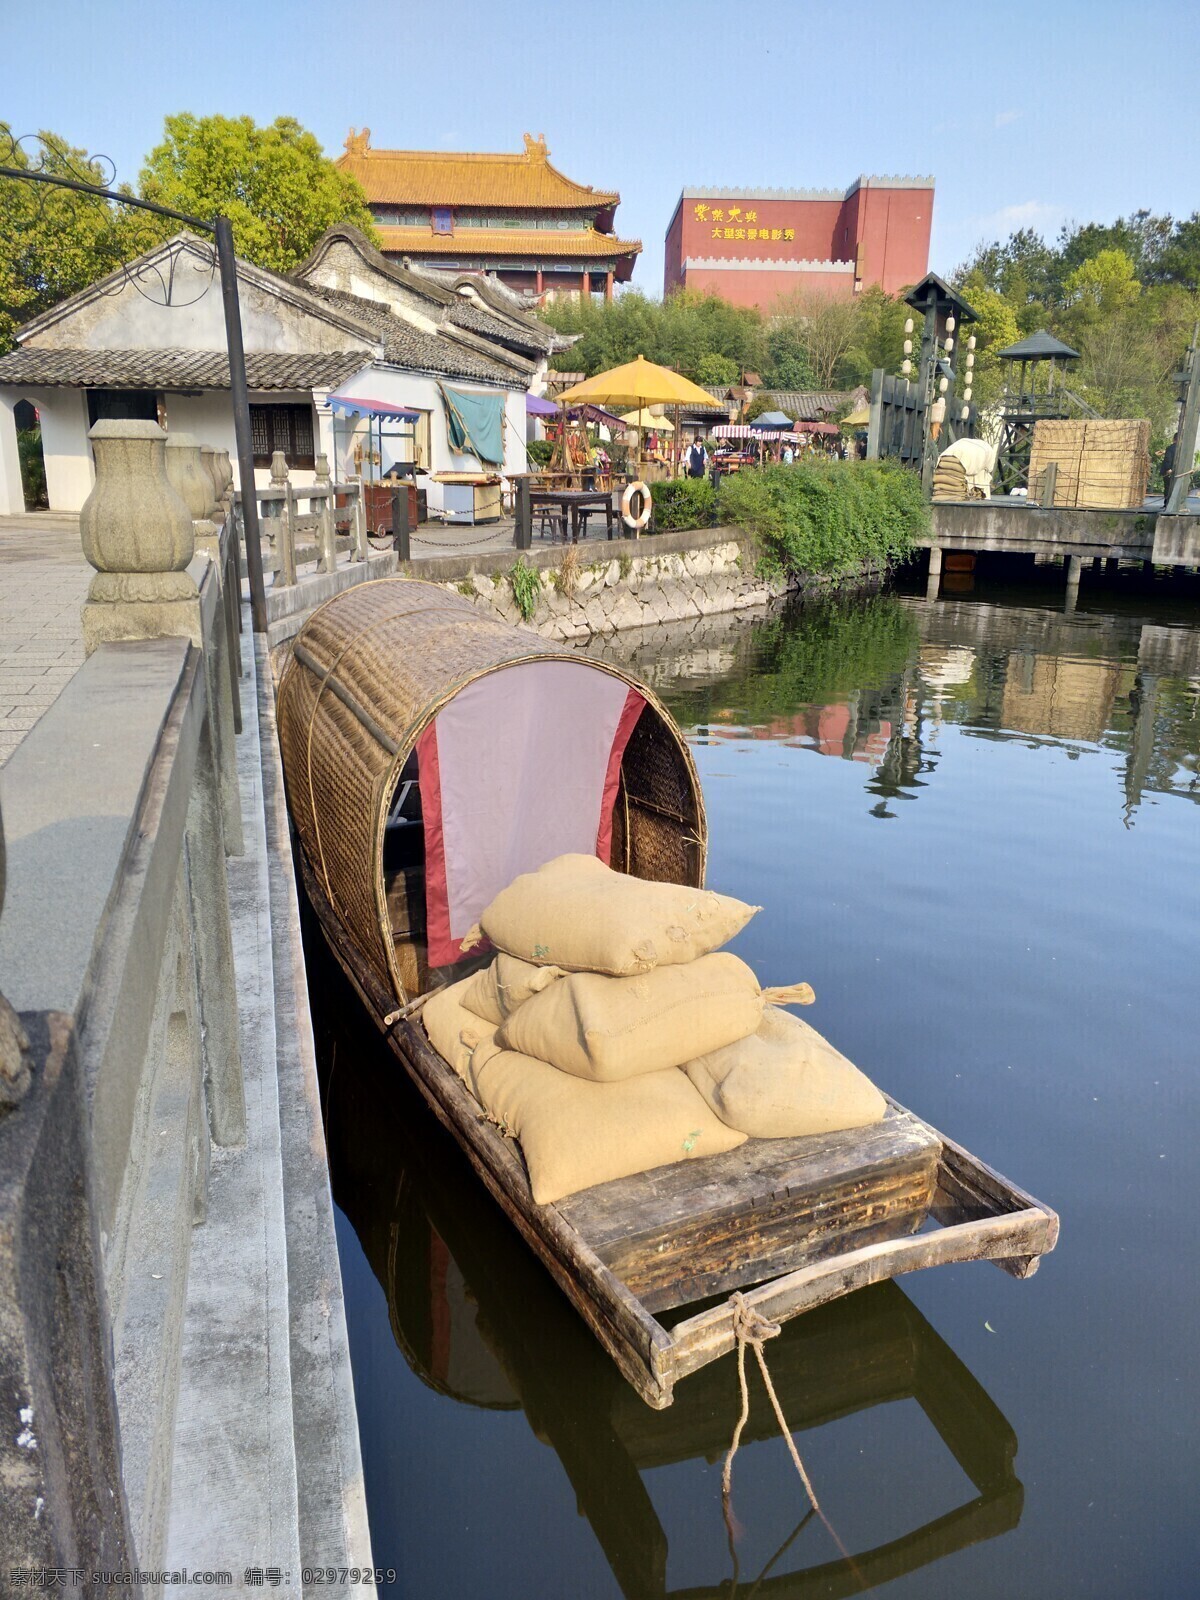 乌蓬船 木船 木舟 船 停泊 靠岸 麻袋 桥 湖 风景照 旅游摄影 国内旅游